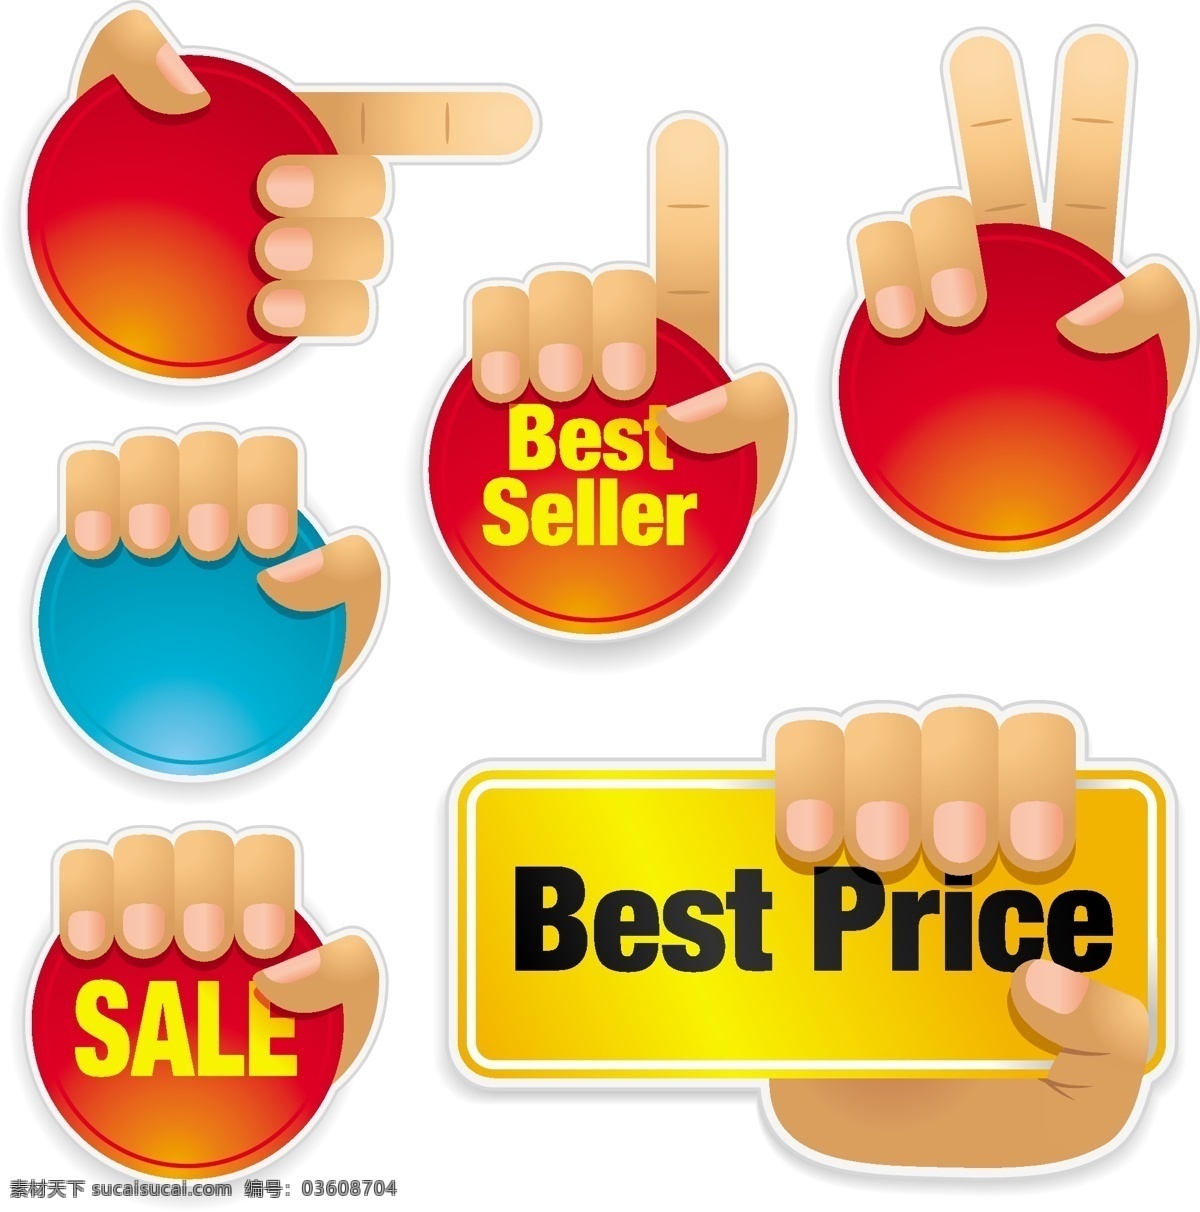 减价 促销 元素 best price sale 手势 减价促销元素 元素底图 seller 矢量图 其他矢量图